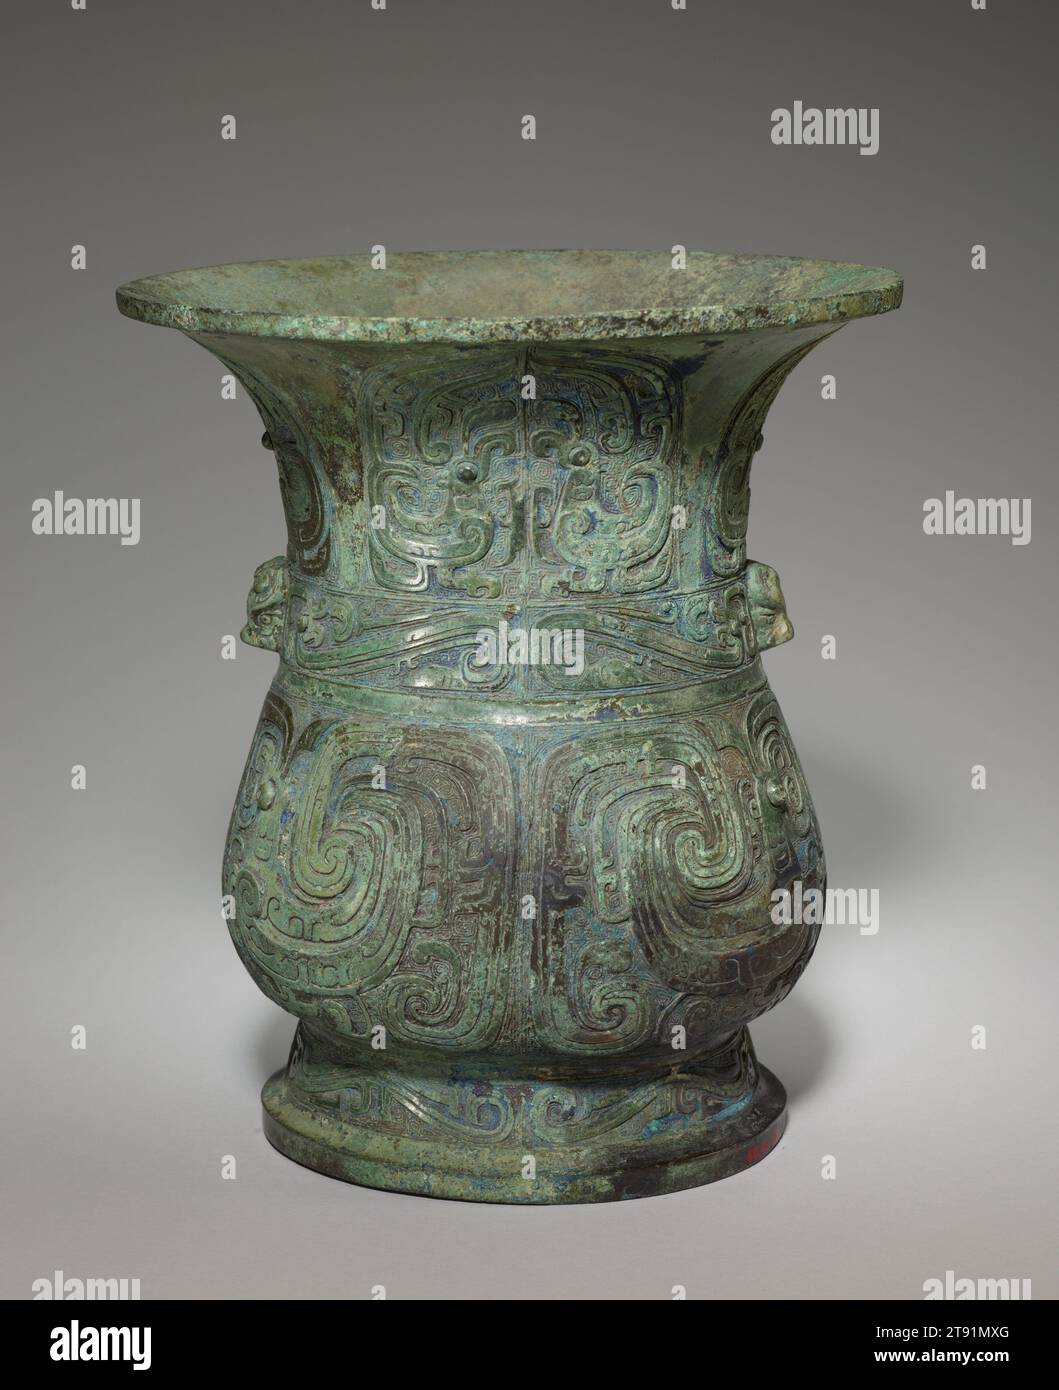 Récipient à vin Zun, 10e siècle av. J.-C., 9 13/16 × 8 7/8 × 8 3/4 po., 7,9 lb. (25 × 22,5 × 22,2 cm, 3,6 kg)6 1/16 × 6 po. (15,4 × 15,2 cm) (partie de l'objet, pied), Bronze, Chine, 10e siècle av. J.-C., cette forme de récipient, connue sous le nom de zun, était utilisée pour contenir le vin. De tels vaisseaux apparaissent au cours de la période Erligang de la dynastie Shang (c. 1500–1300 av. J.-C.) et atteignent l'apogée de leur popularité dans la dynastie Zhou occidentale (c. 1046–771 av. J.-C.). La pièce est un exemple de la plus ancienne de plusieurs variétés de zun. Au milieu de la période Zhou occidentale (c. 976–886 av. J.-C.), la décoration en bronze a commencé un processus de transformation stylistique Banque D'Images